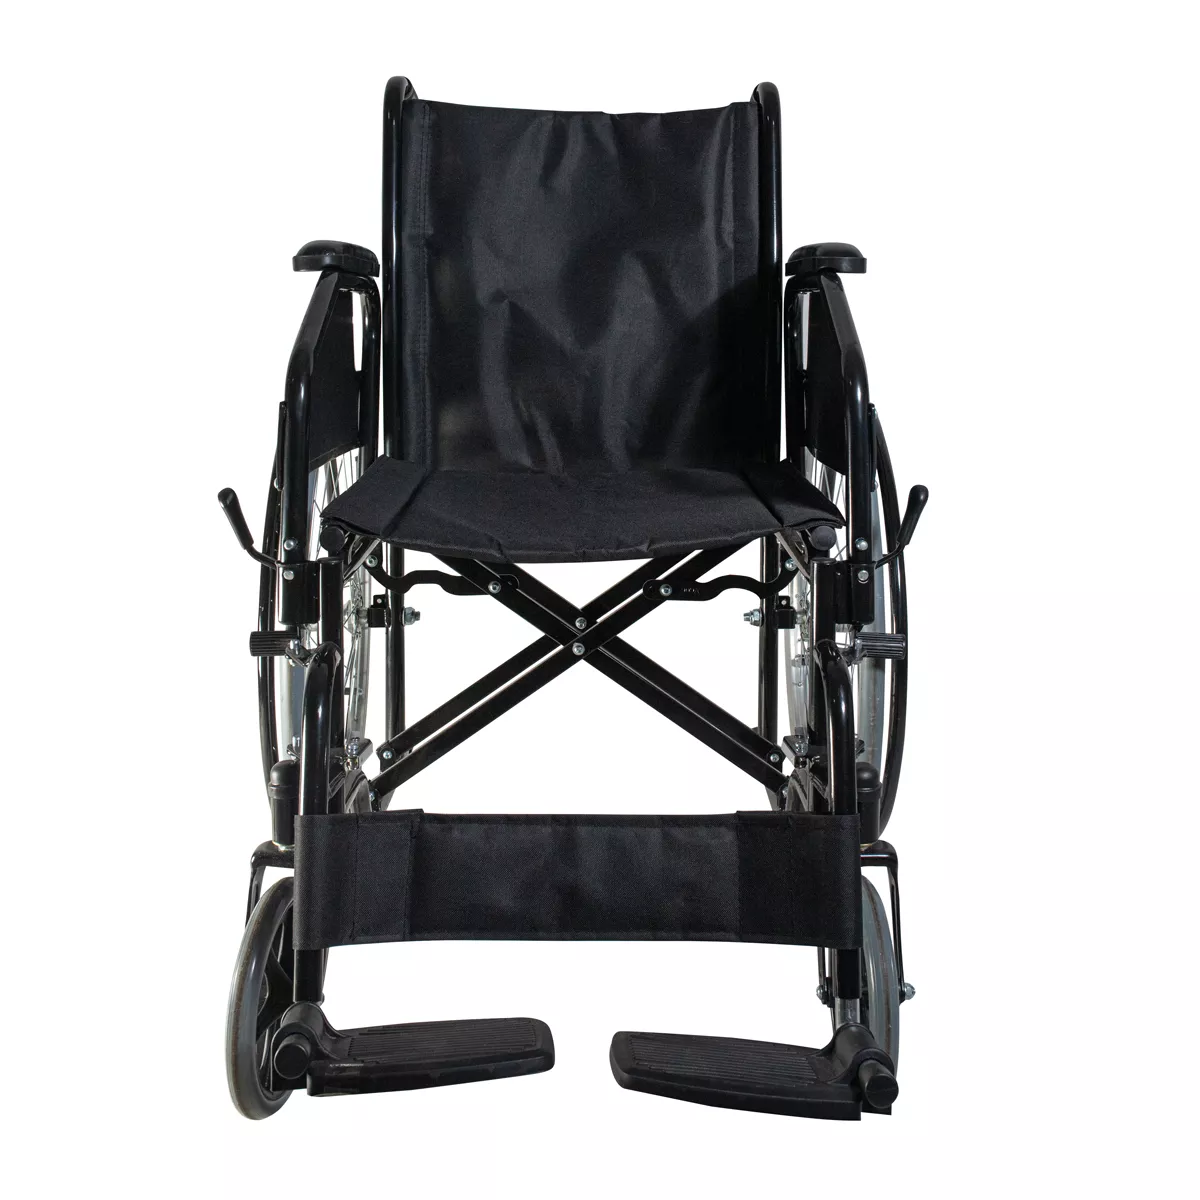 Почему инвалидная коляска - это идеальный выбор для повышения качества жизни